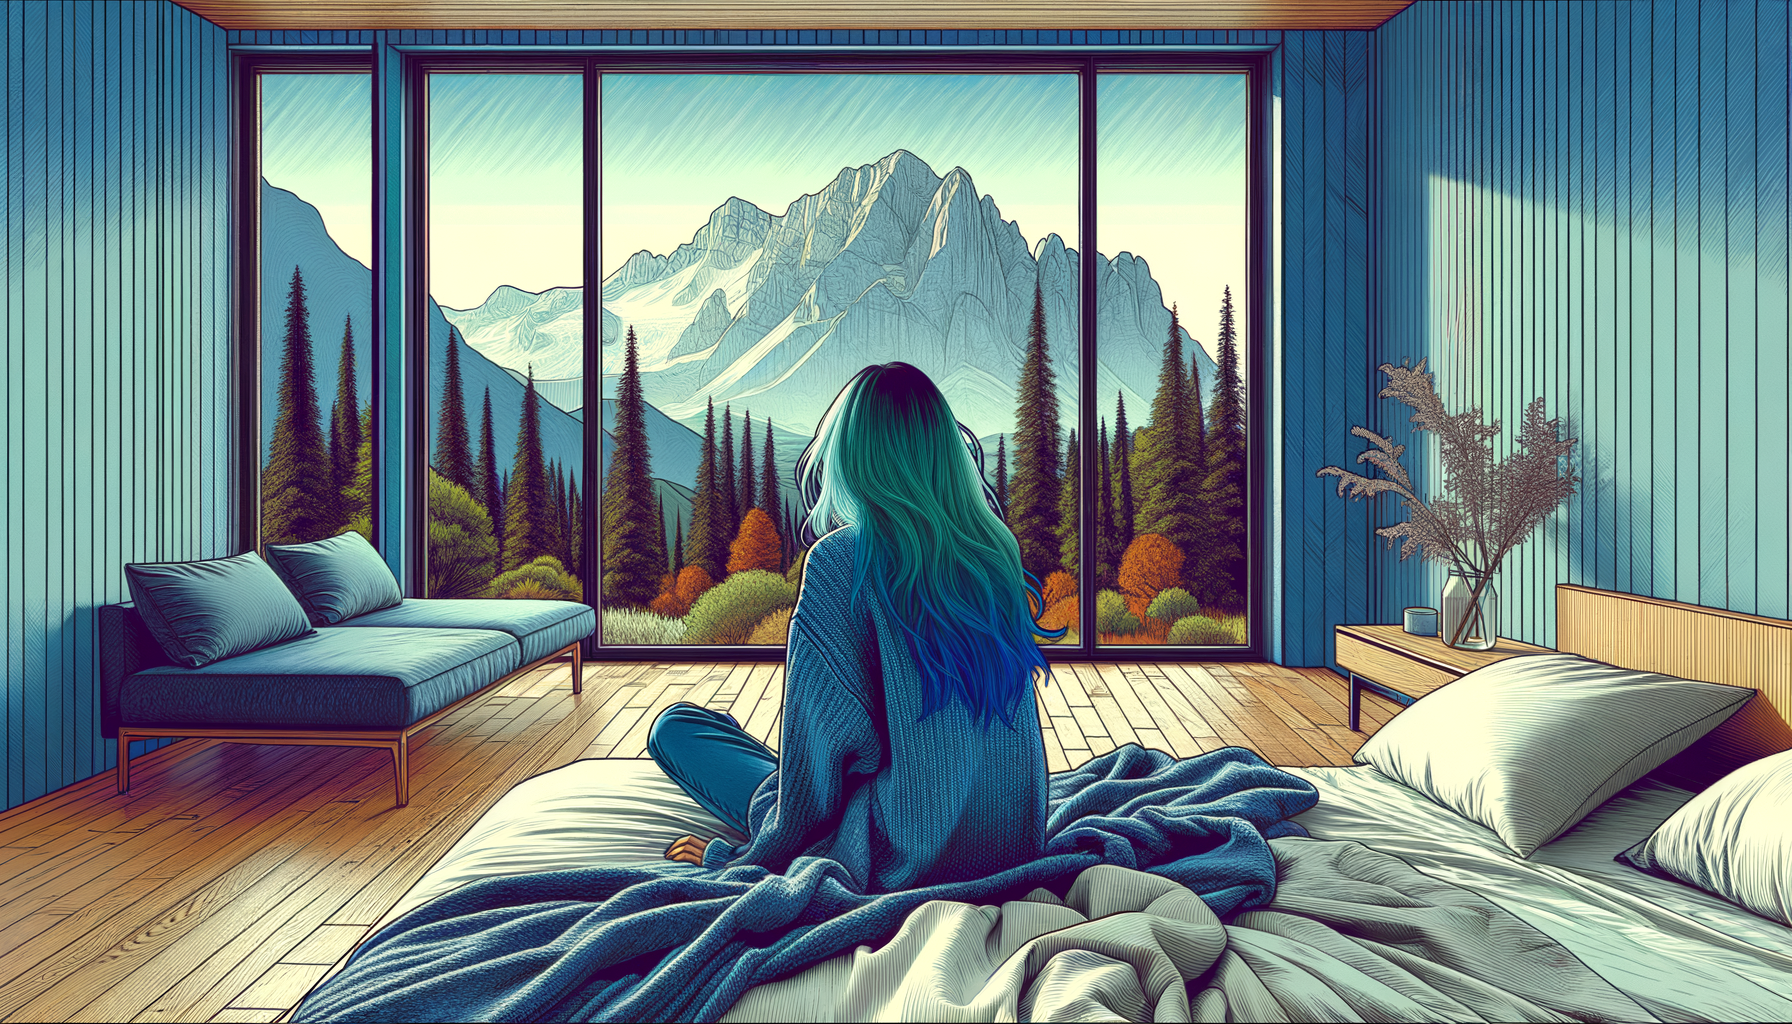 панорамные окна, вид на горы и деревья, девушка, сидит на кровати, смотрит в окна, голубоватые волосы, растрепанные волосы, в голубом свитере